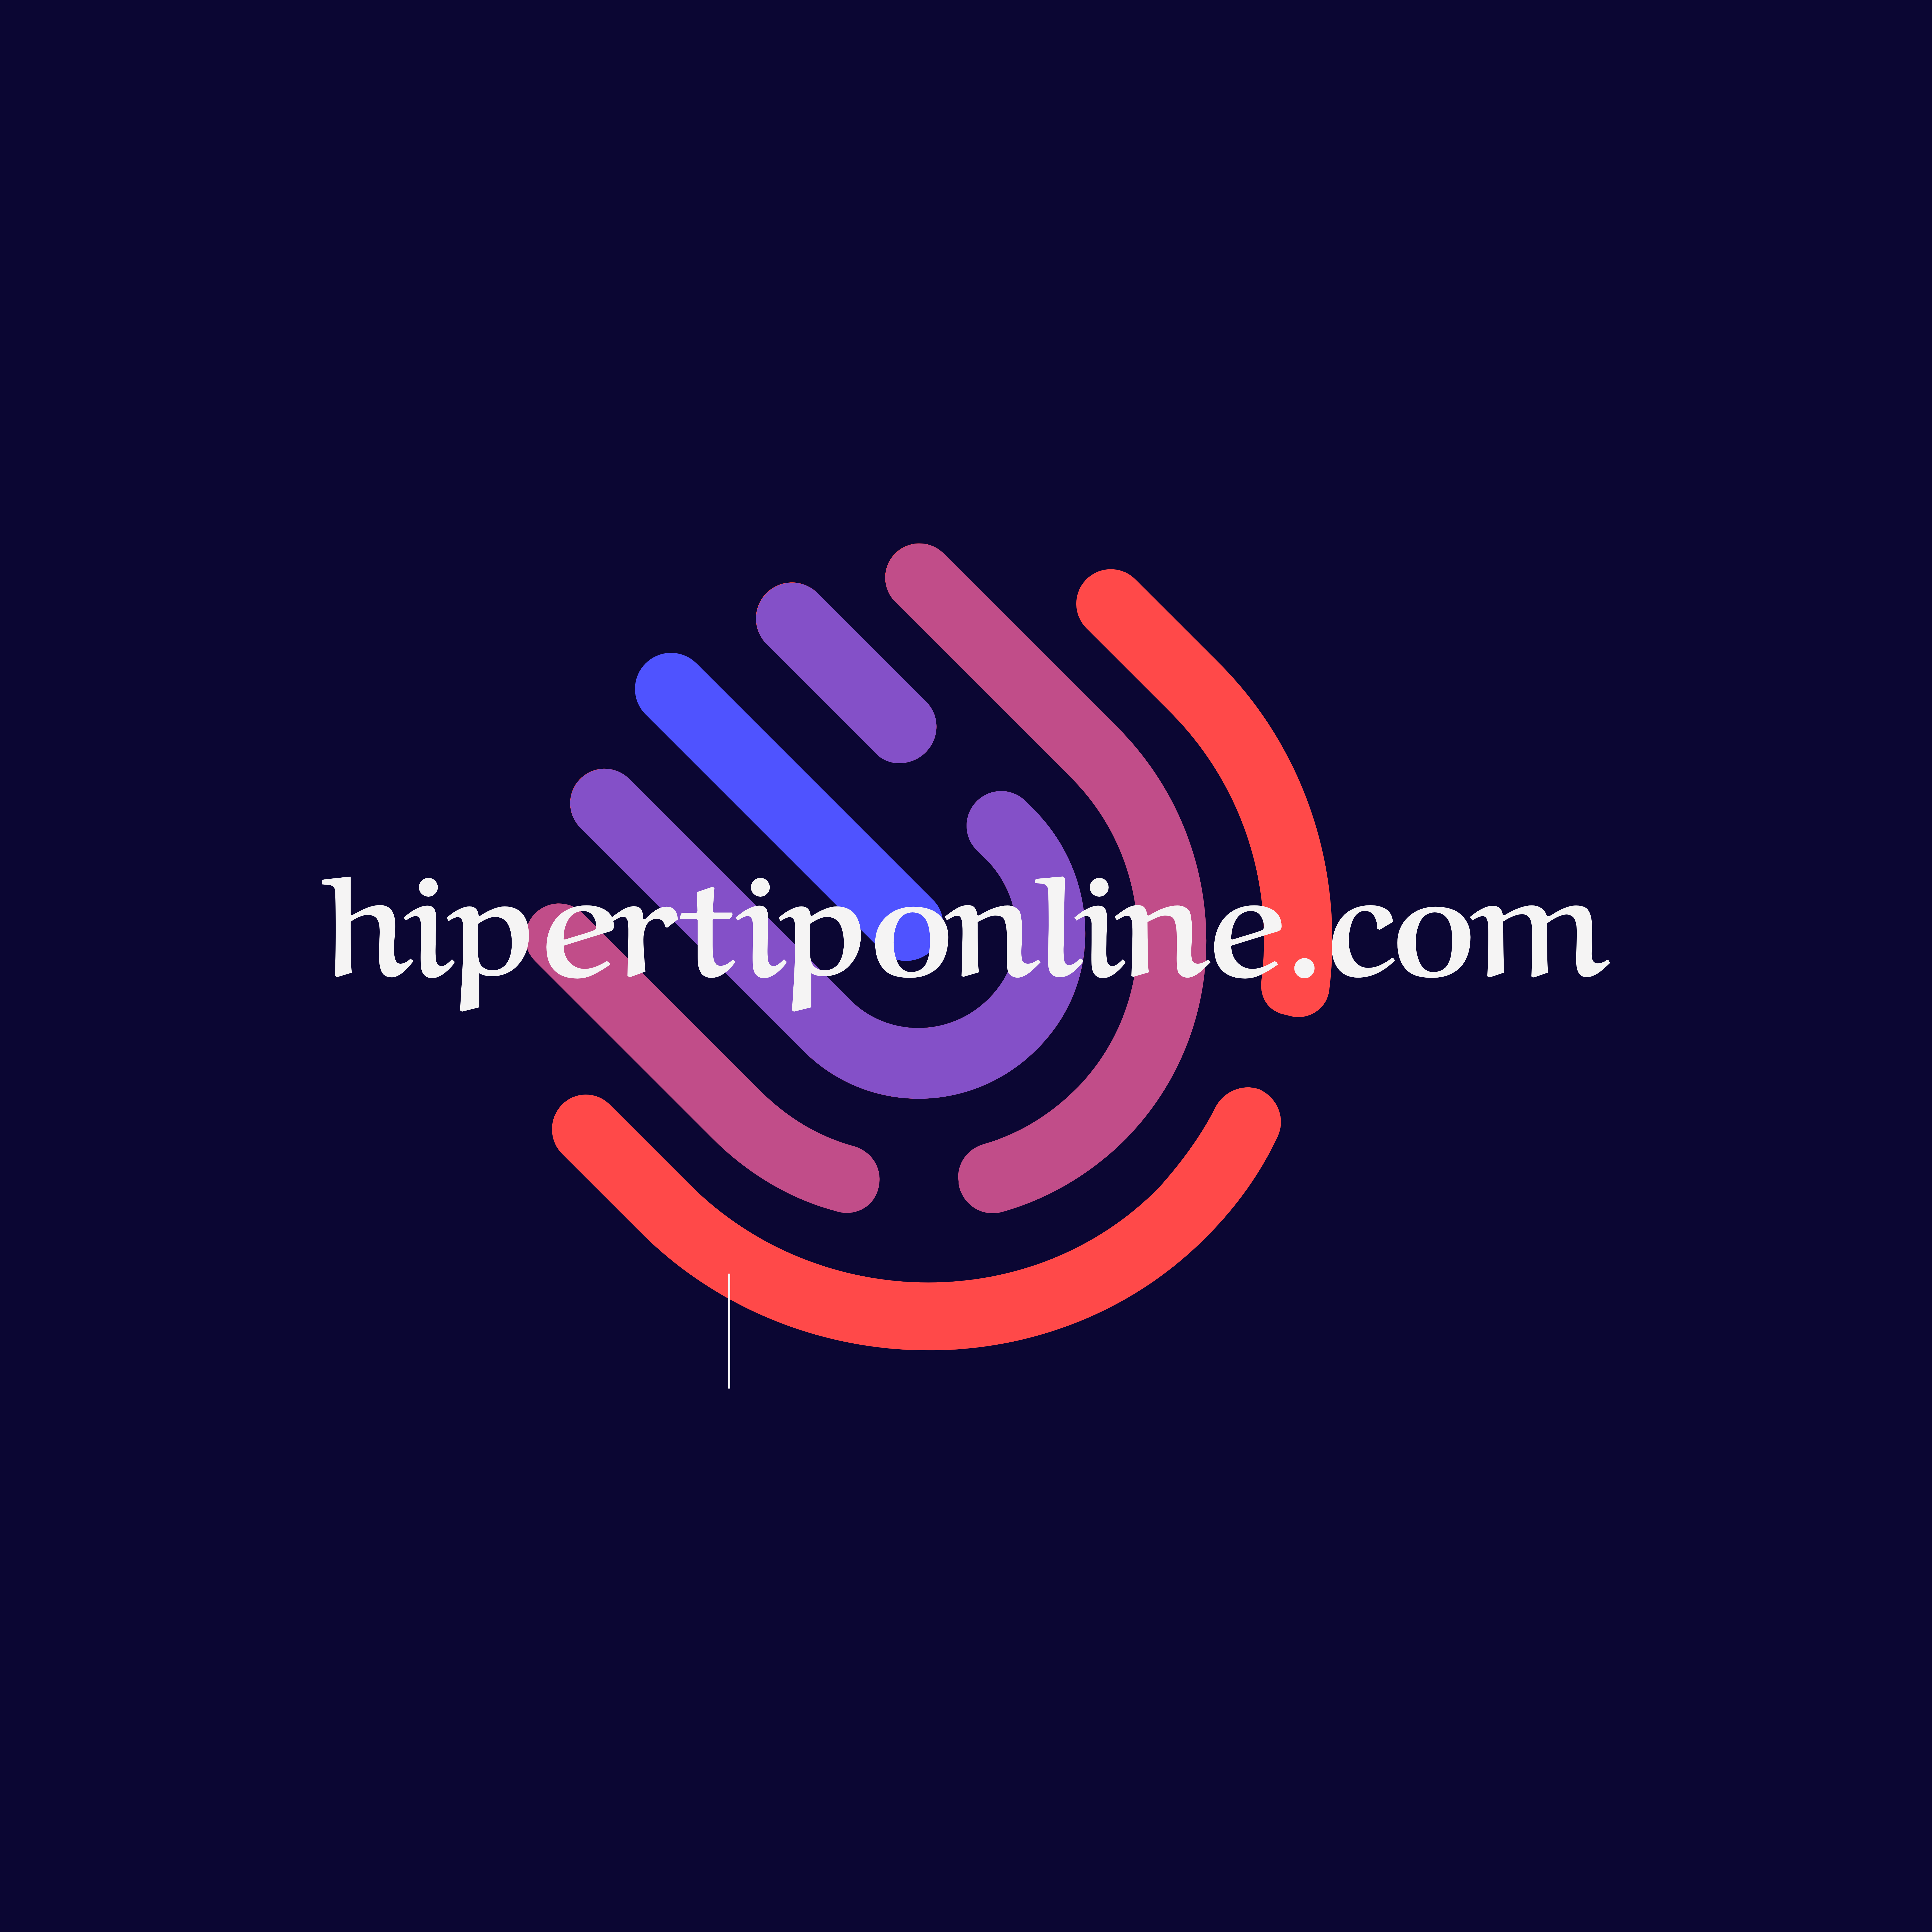 hipertiponline.com